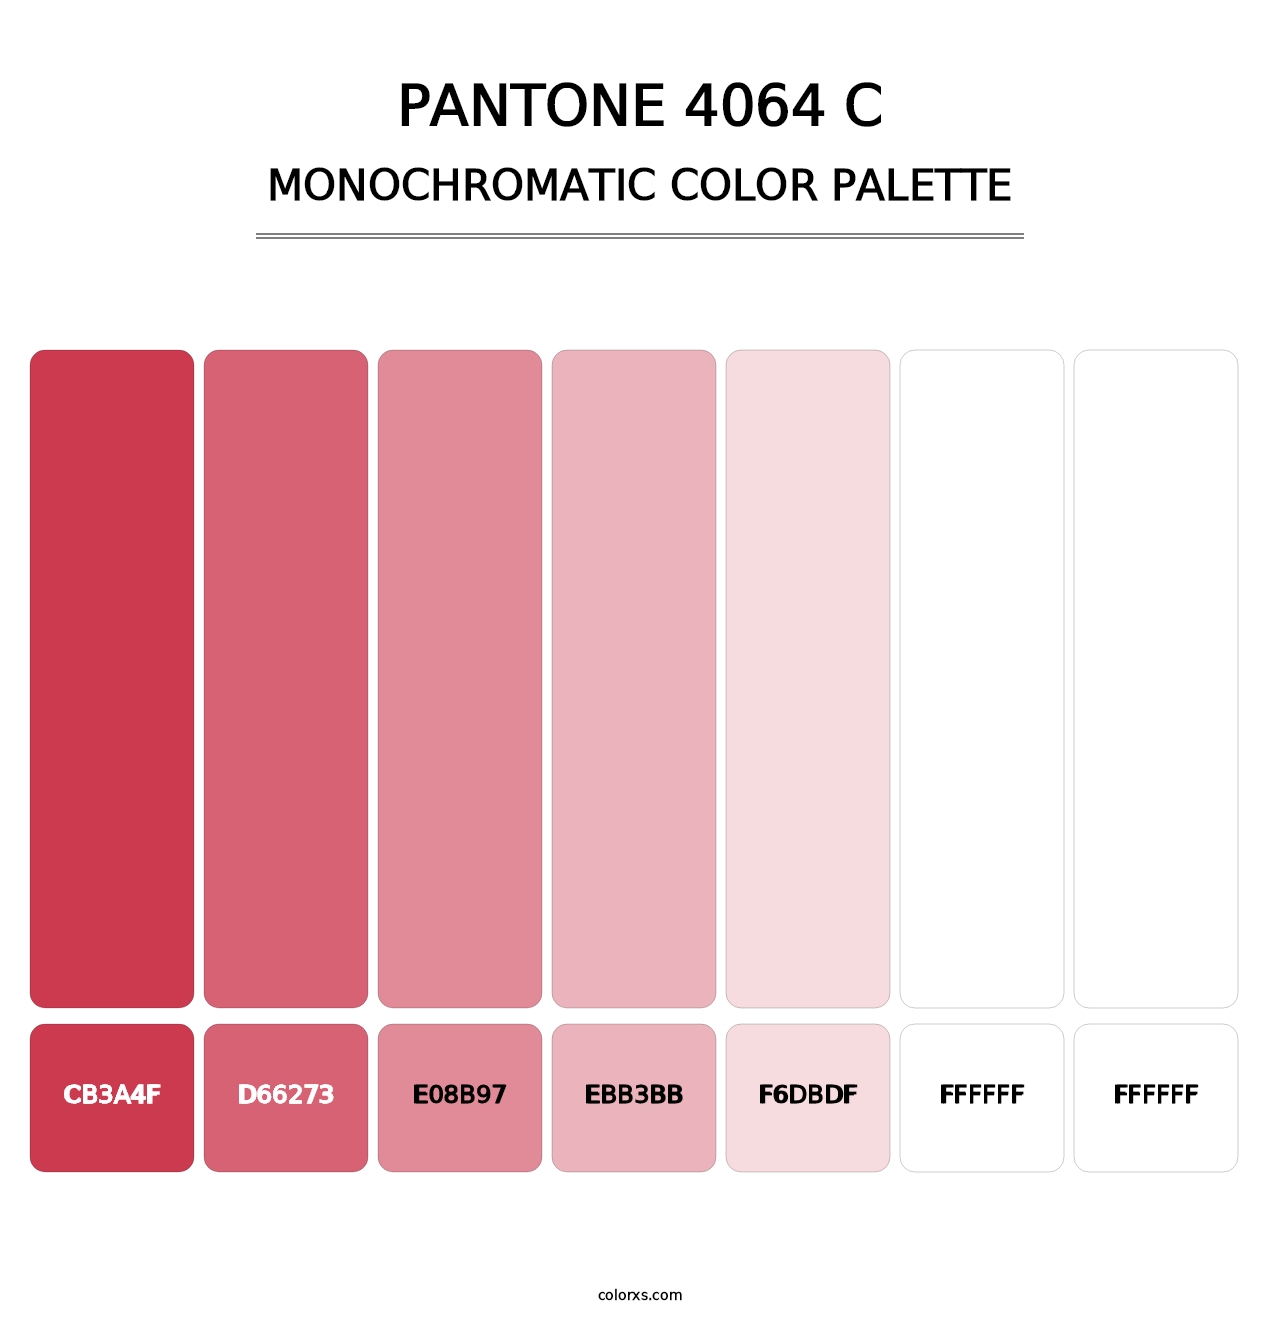 PANTONE 4064 C - Monochromatic Color Palette